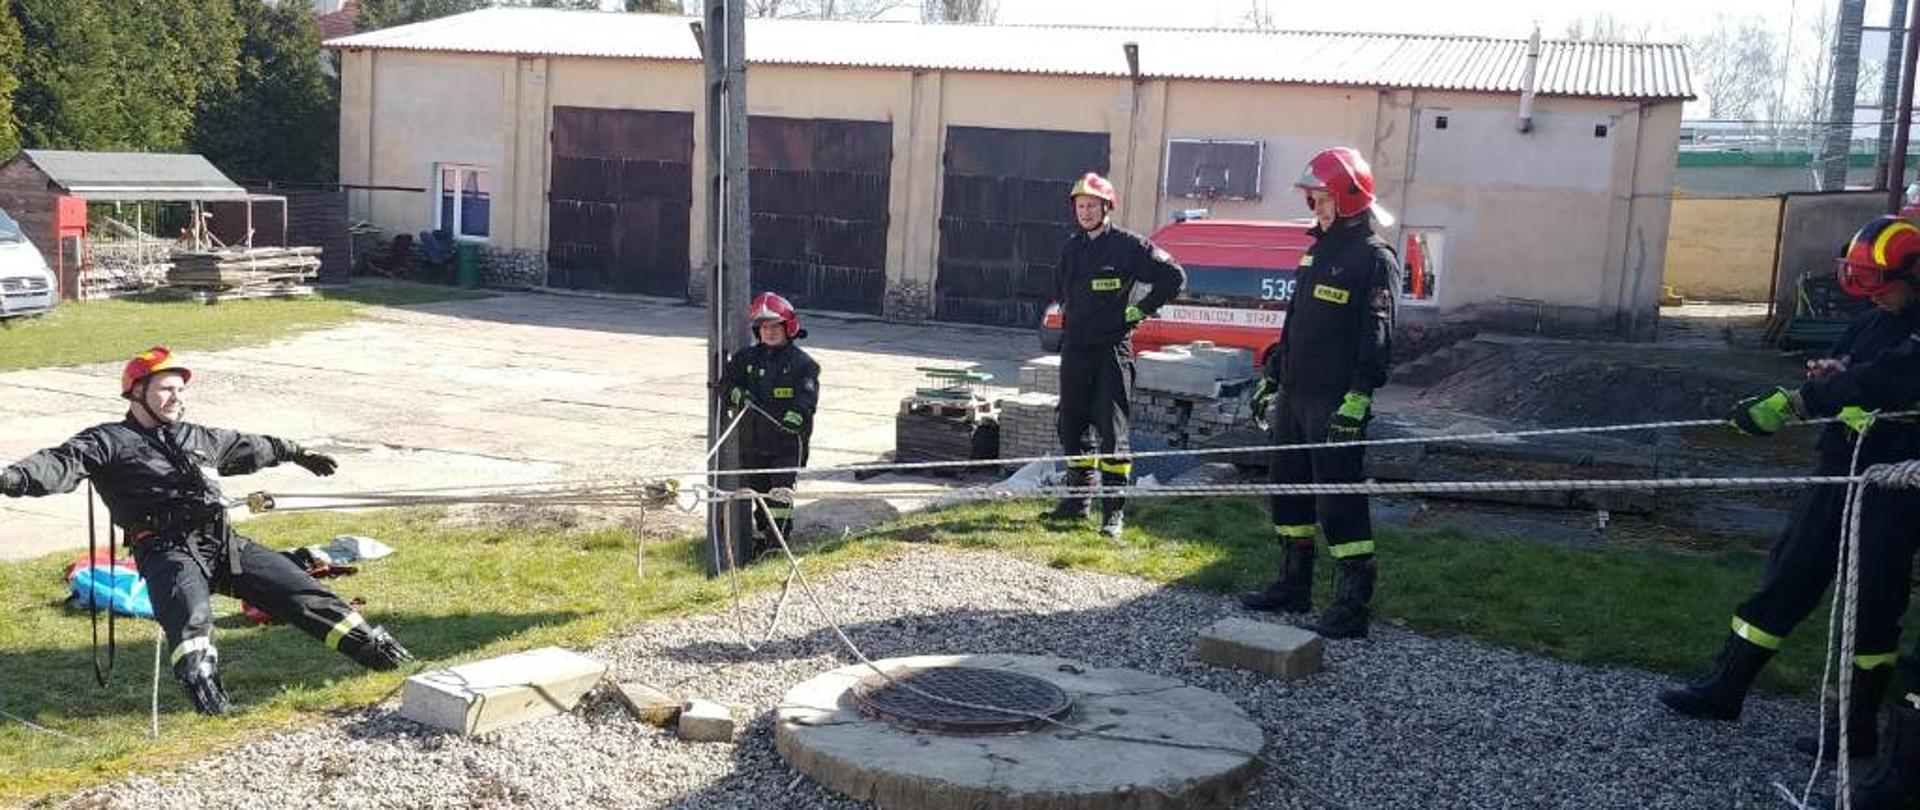 Strażacy Ostródzkiej JRG doskonalący umiejętności z zakresu ratownictwa w studniach i wykopach ziemnych.